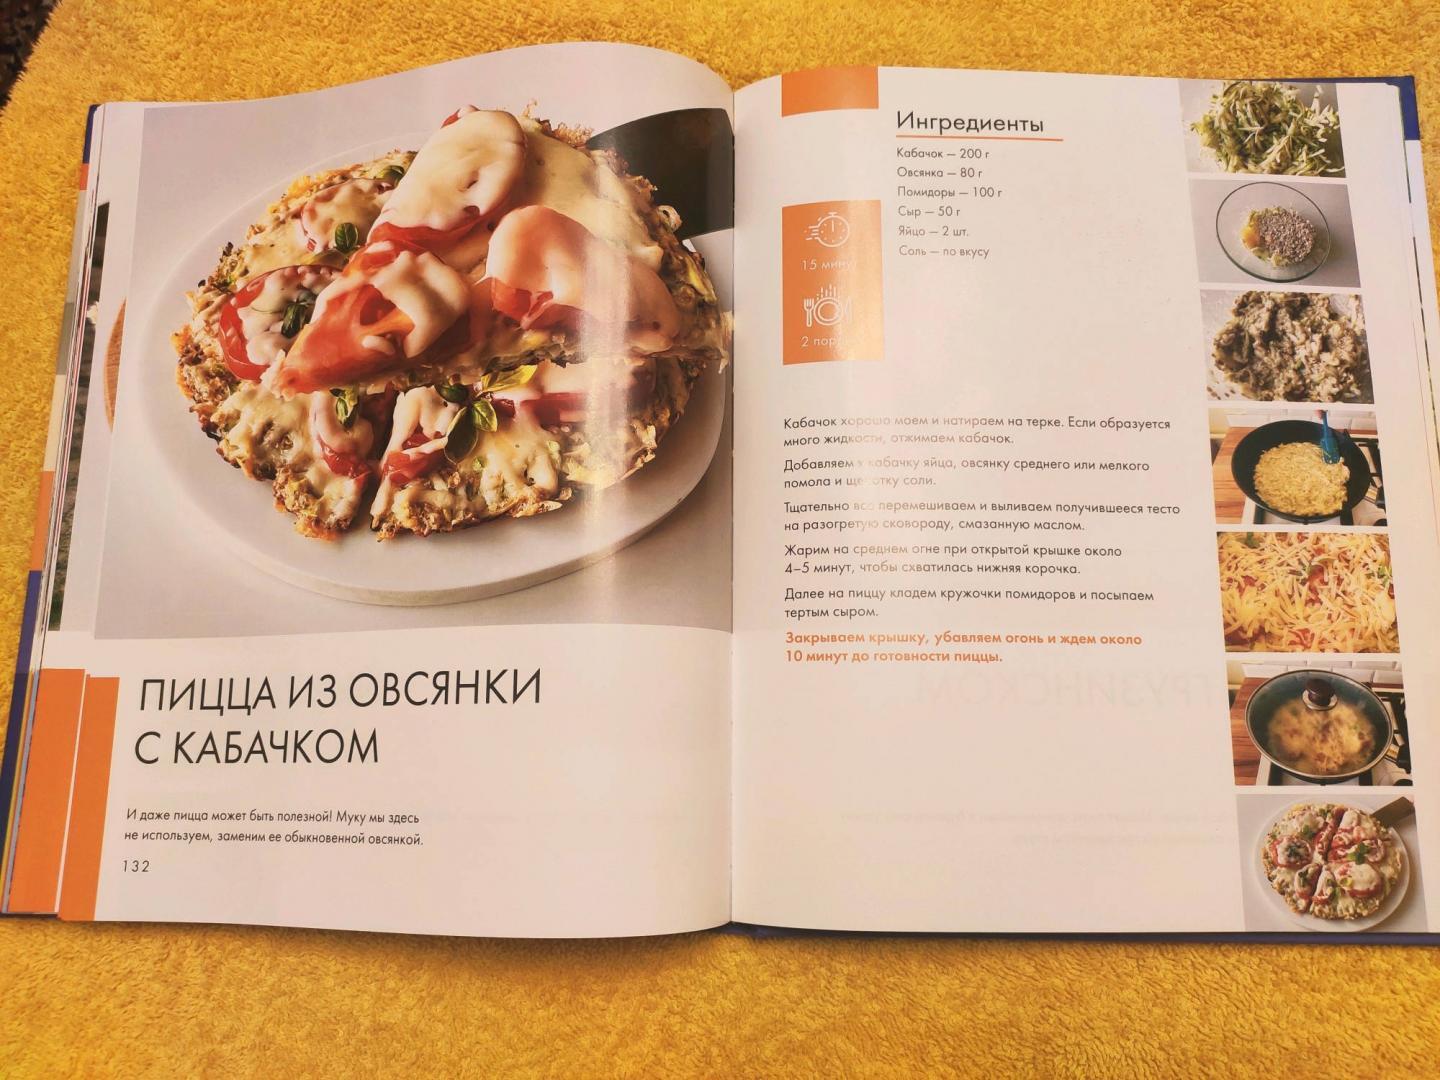 Простые рецепты на каждый день с пошаговым описанием и фото. Книга рецептов!